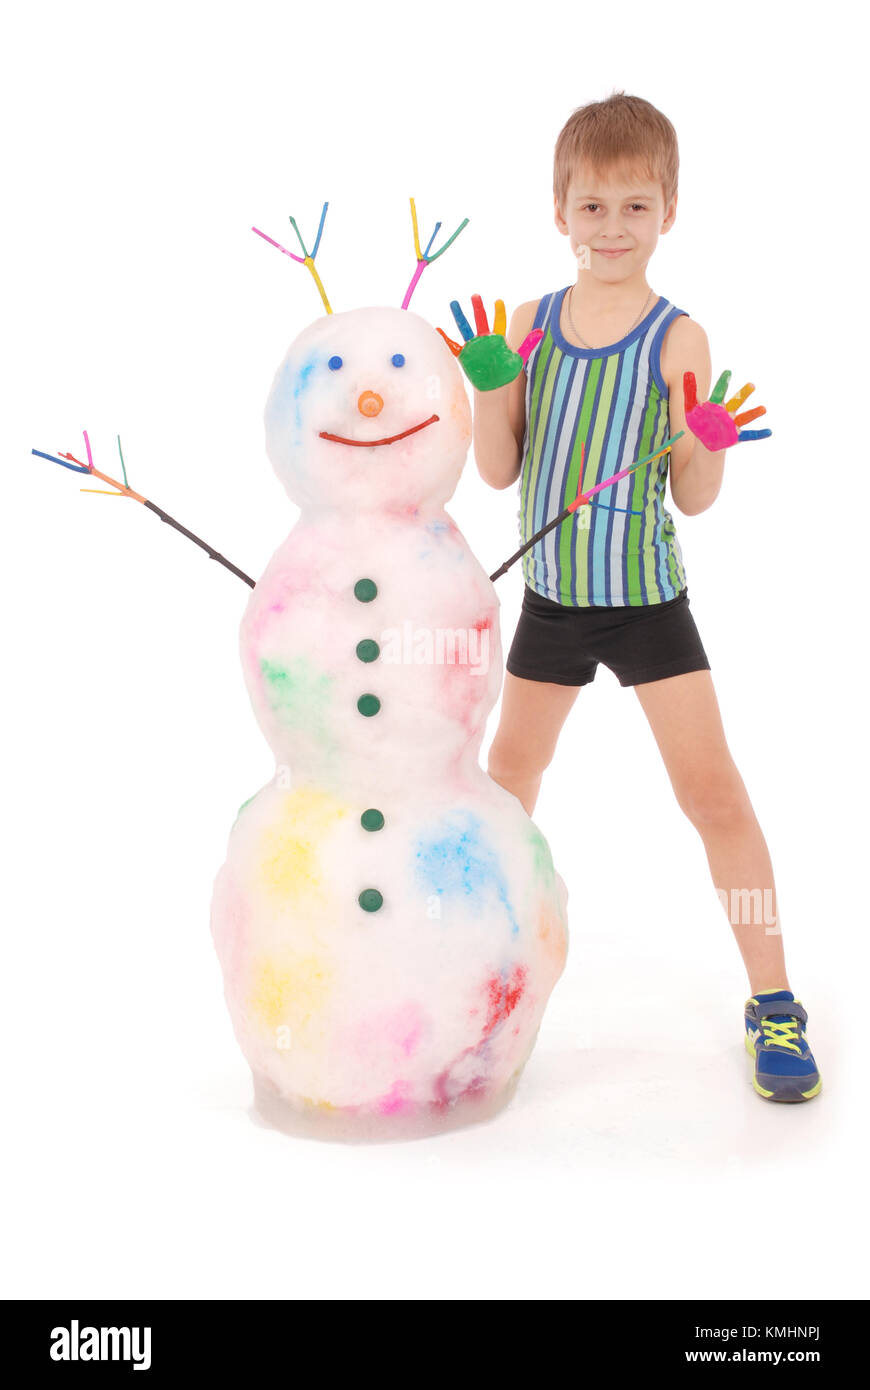 Bel ragazzo con mani di vernice di colore nei pressi di pupazzo di neve con corna colorate e le mani. Su sfondo bianco. Foto Stock